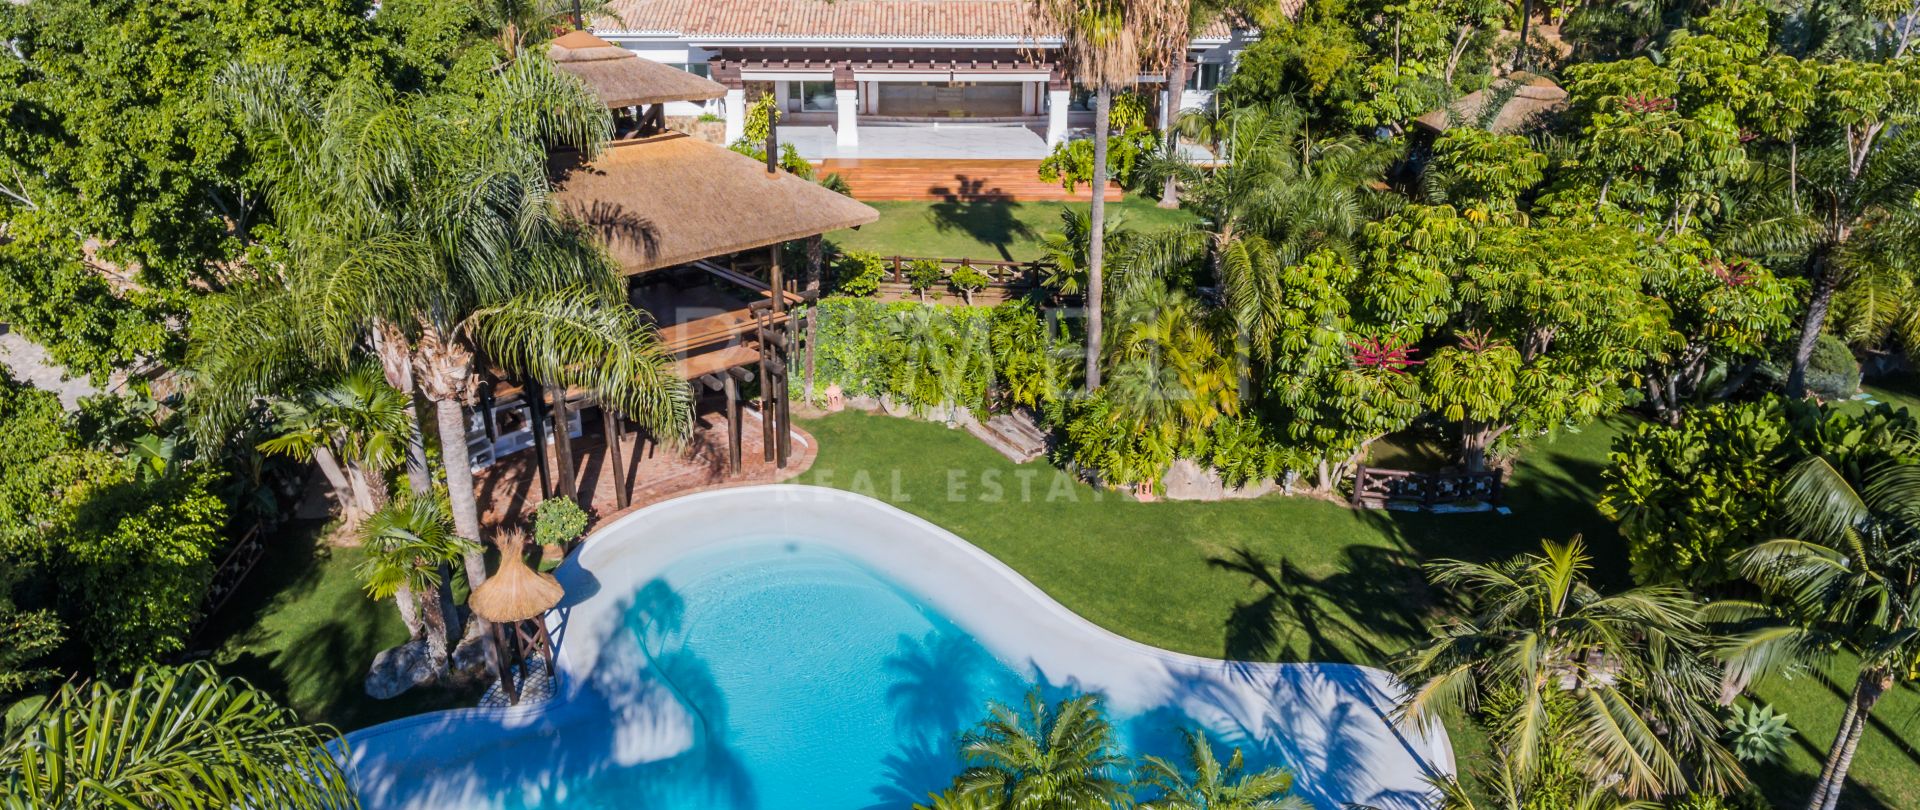 Atemberaubende moderne Mittelmeer-Luxus-Villa, Sierra Blanca